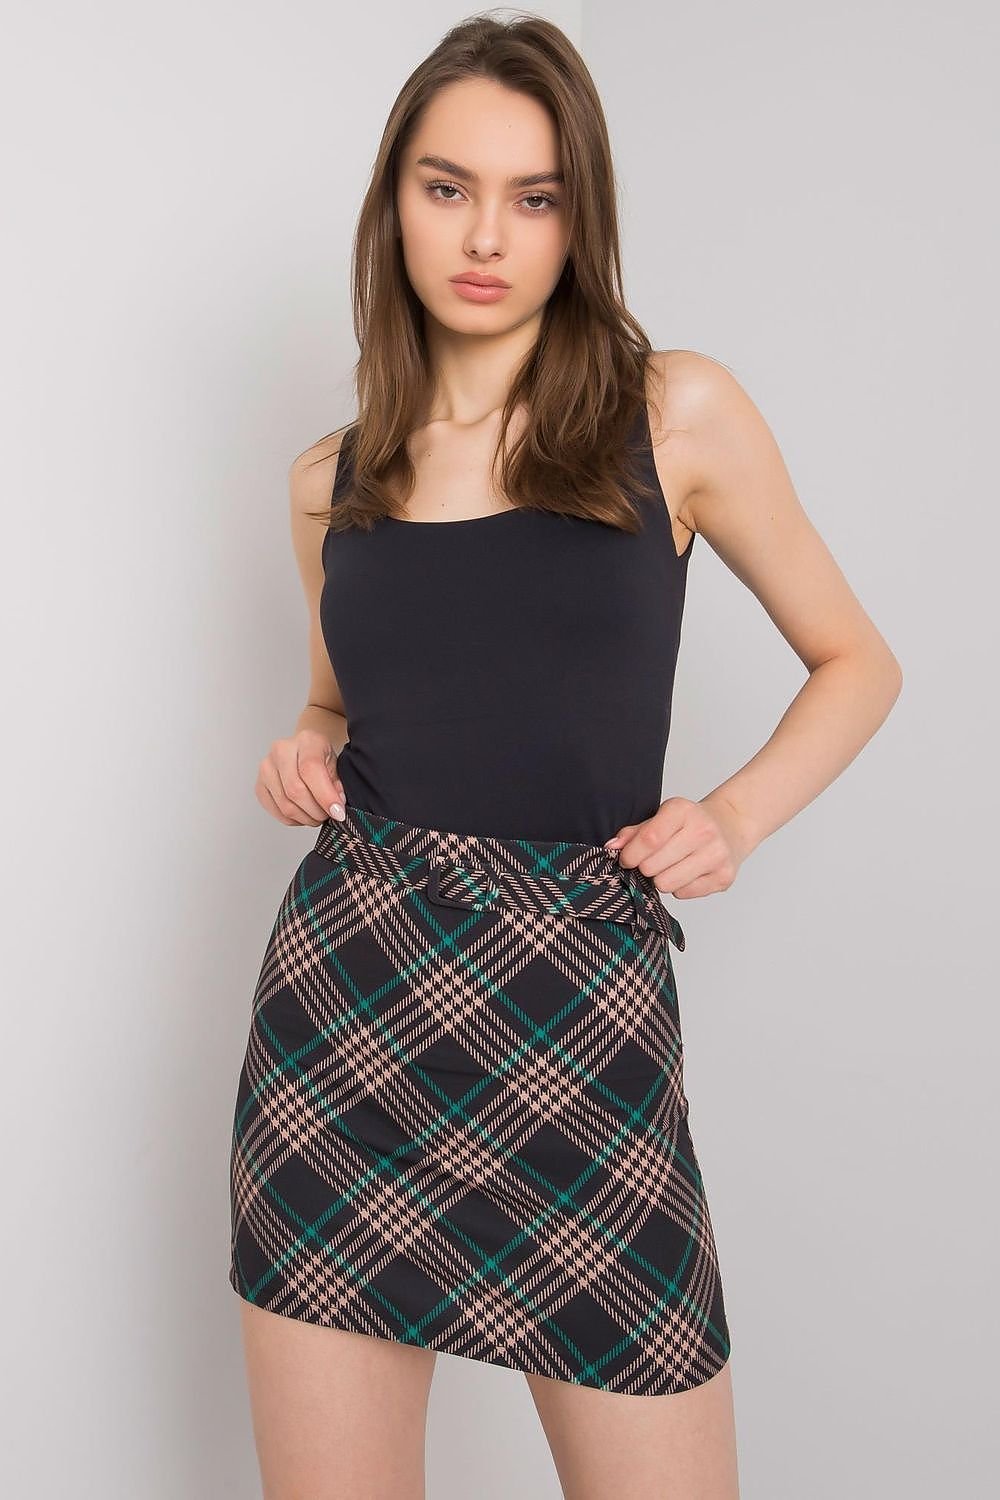 Jupe mini-jupe à carreaux tendance avec lien à nouer, parfaite pour un look casual chic.